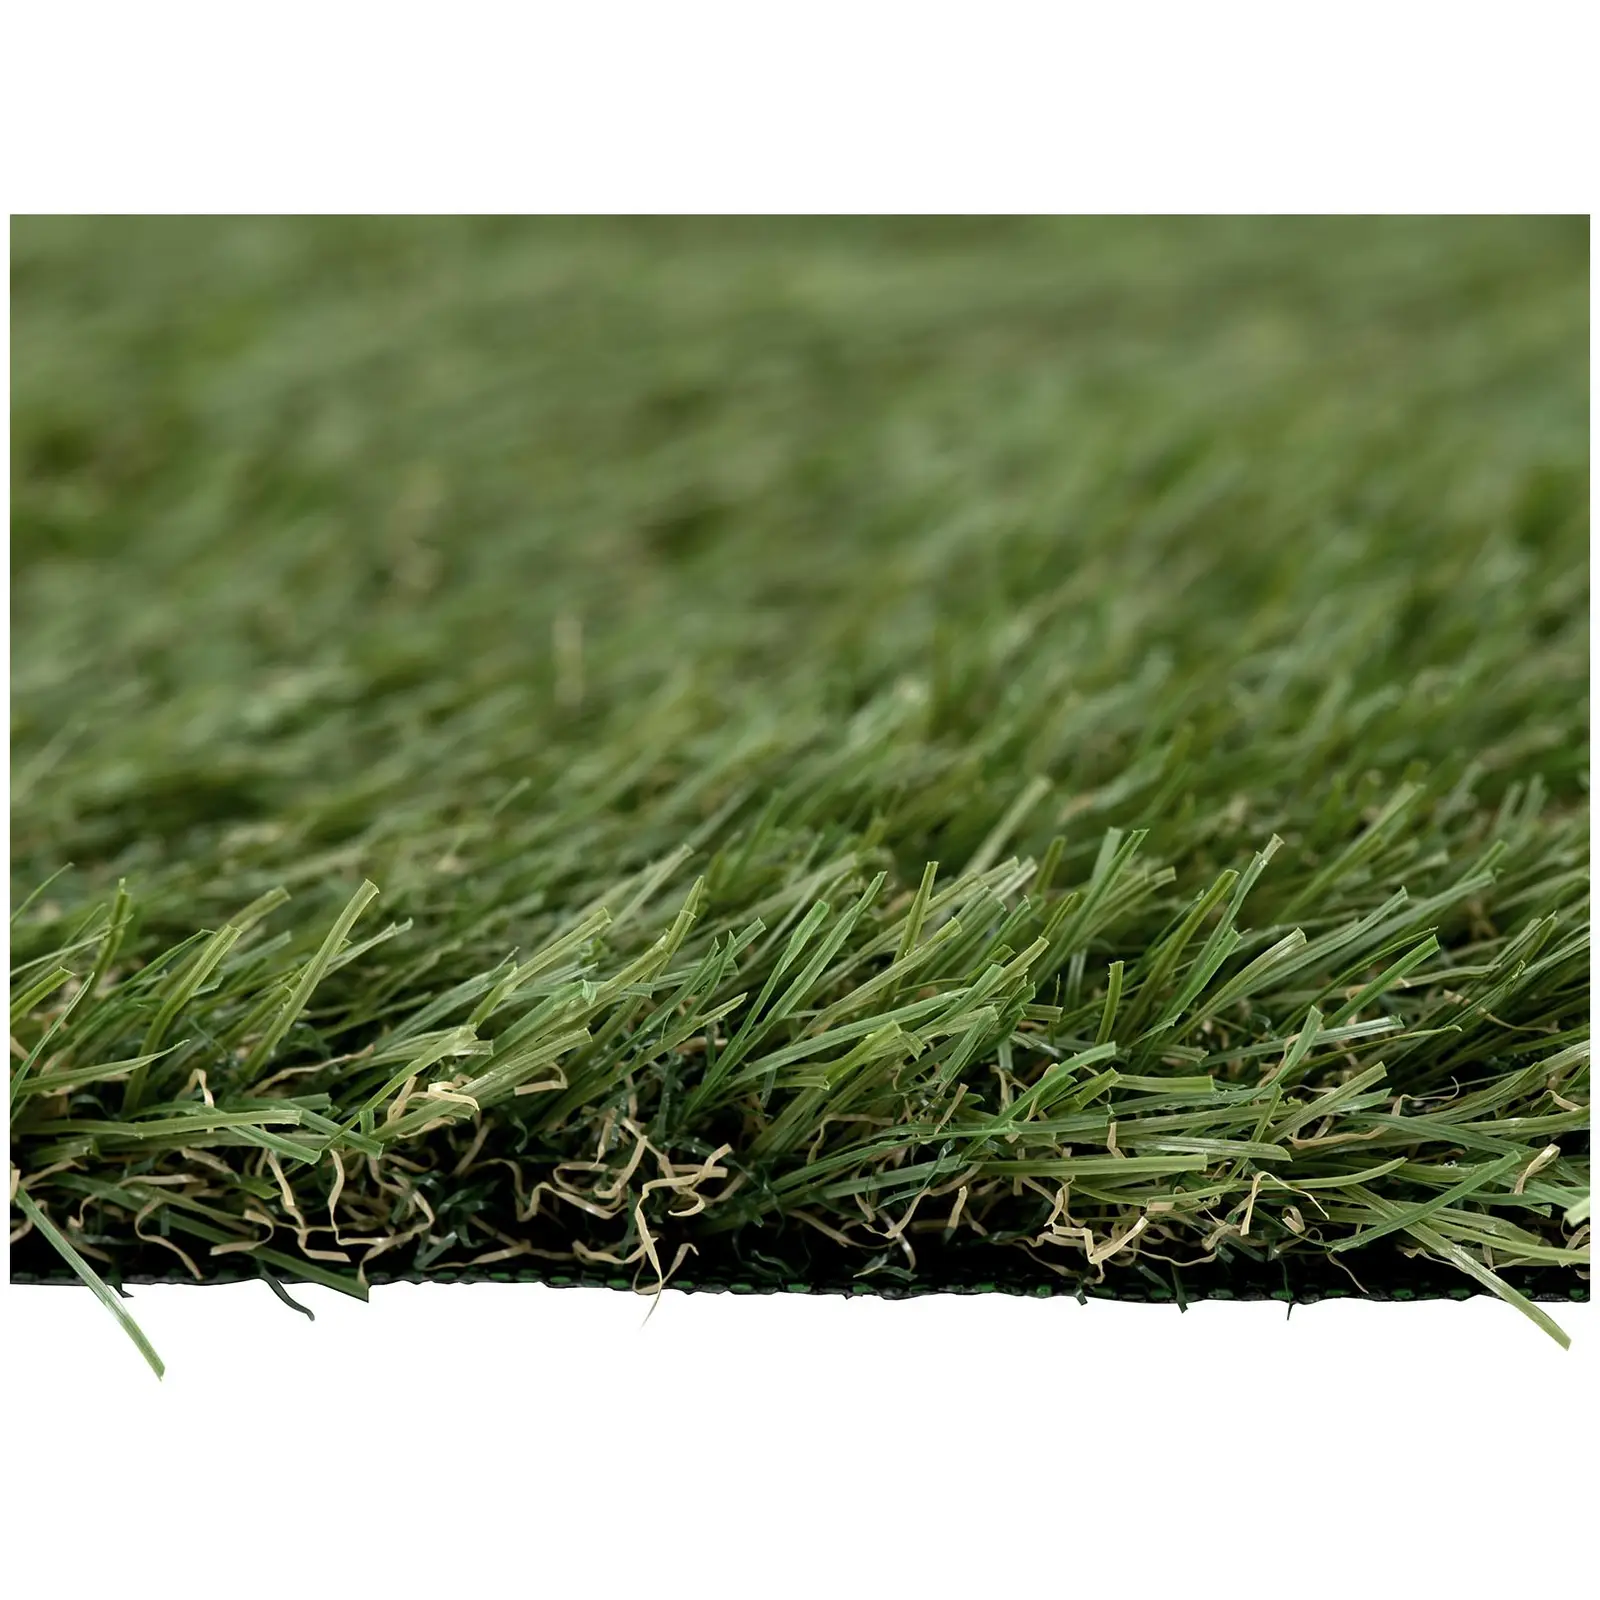 Umělý trávník - 2538 x 200 cm - výška: 30 mm - hustota stehů: 14/10 cm - odolný proti UV záření